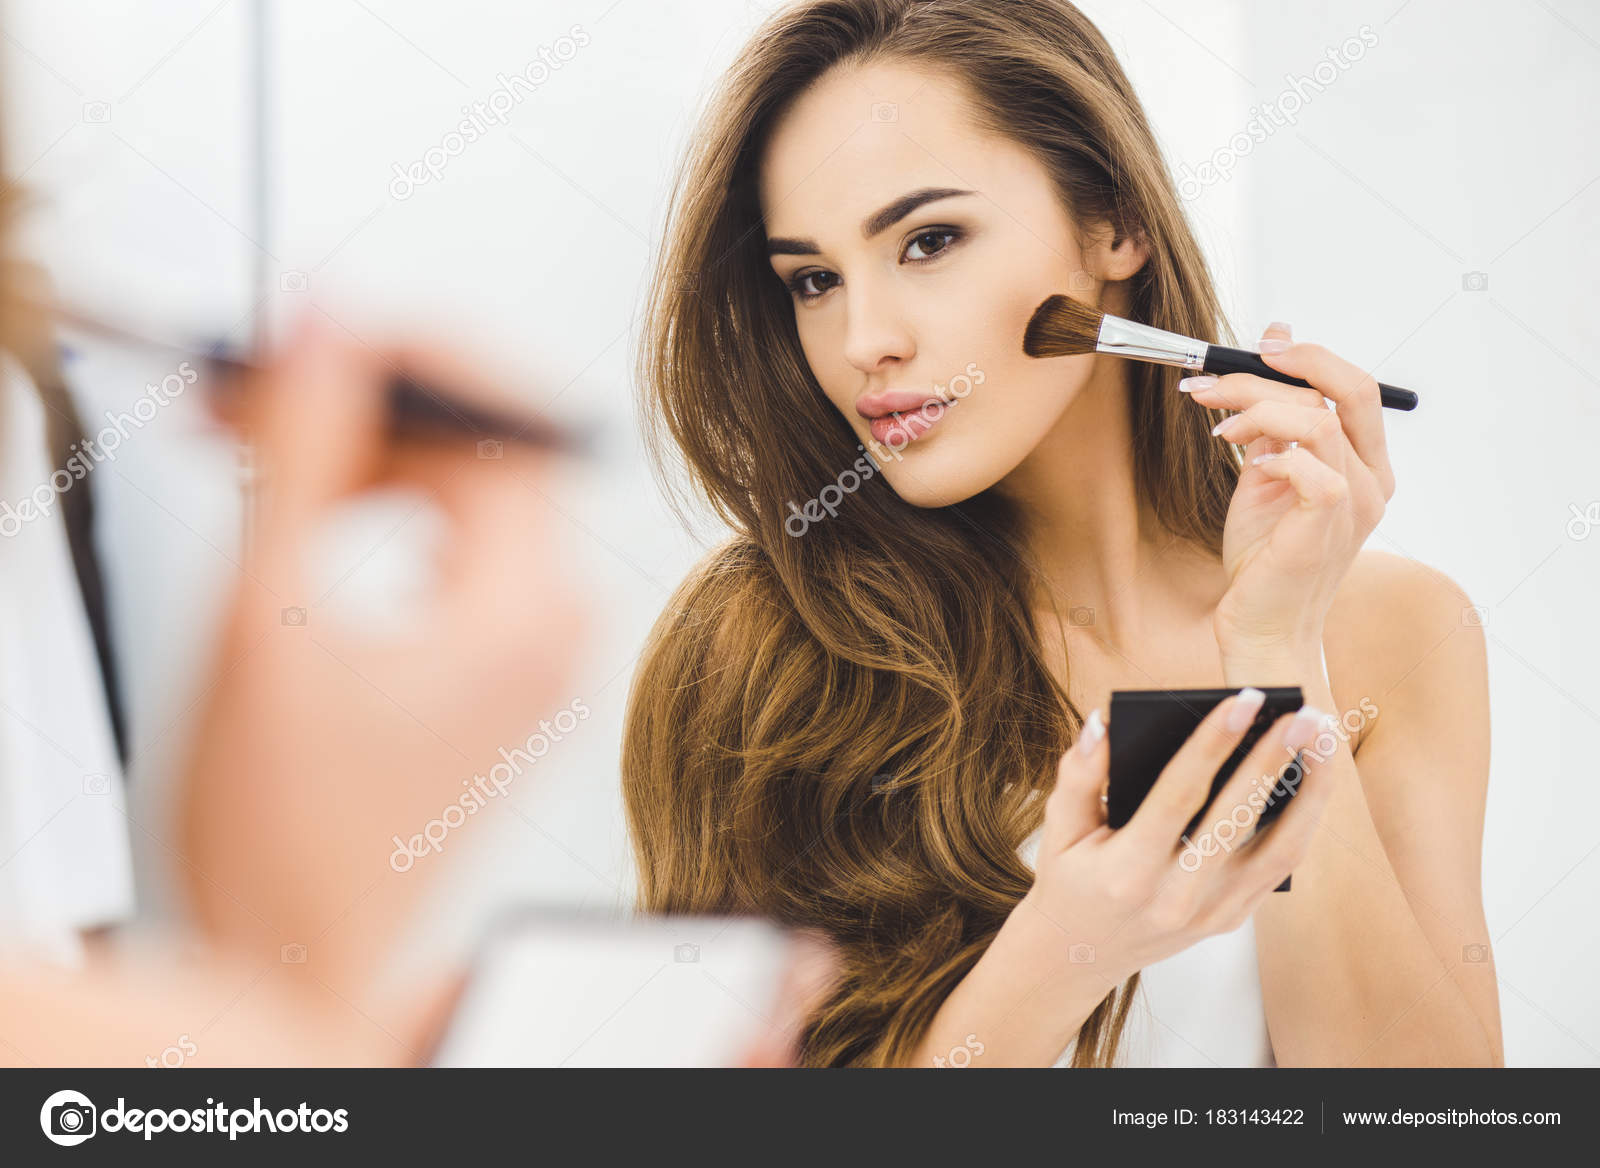 Зеркальное Отражение Красивой Молодой Женщины Наносящей Макияж стоковое фото ©allaserebrina